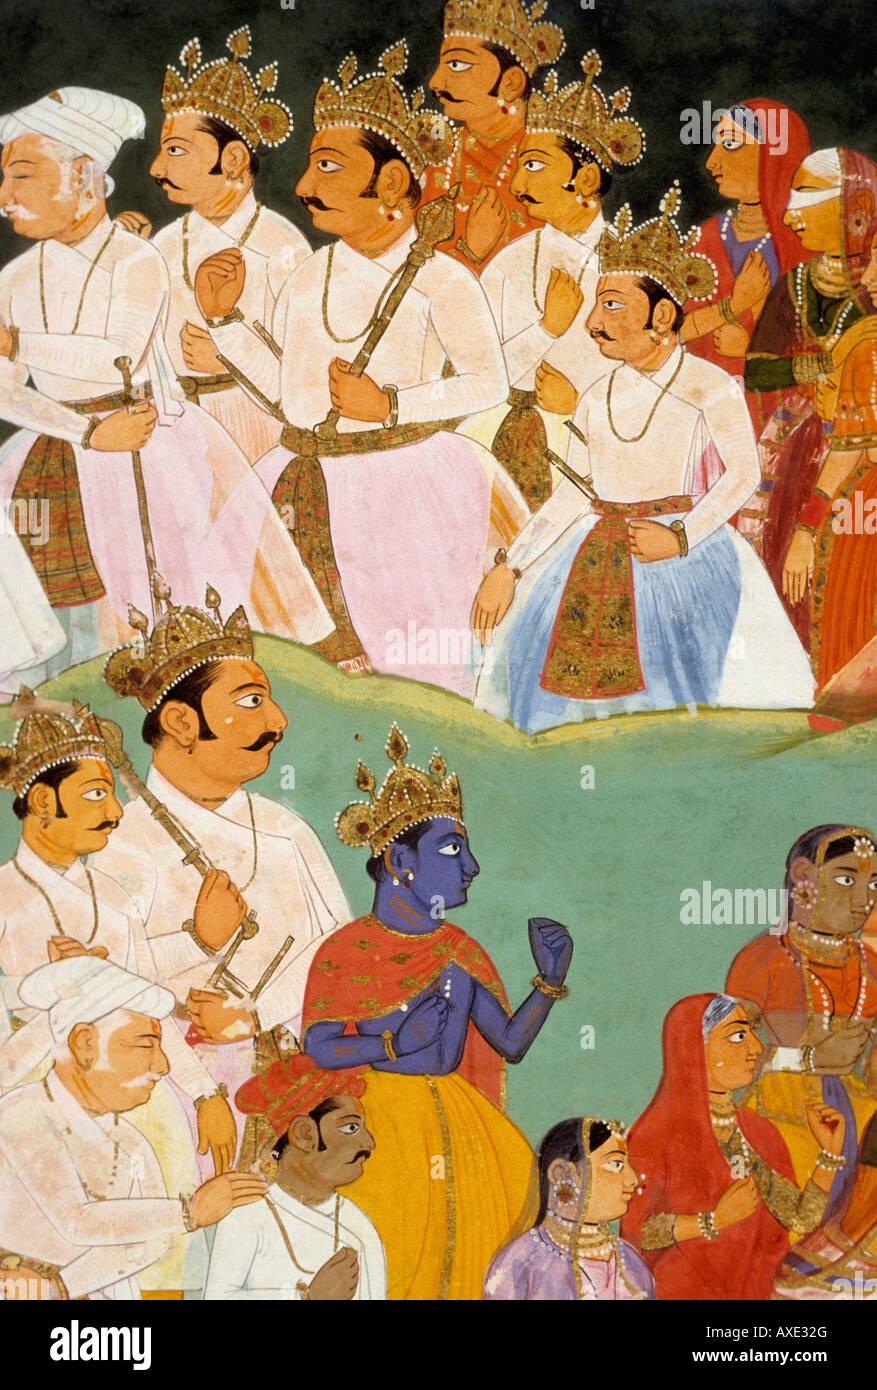 Mewar (Indien) zeremonielle Bad C 1685 Kanorias. Indische Miniaturmalerei, Rajasthan Indien Stockfoto